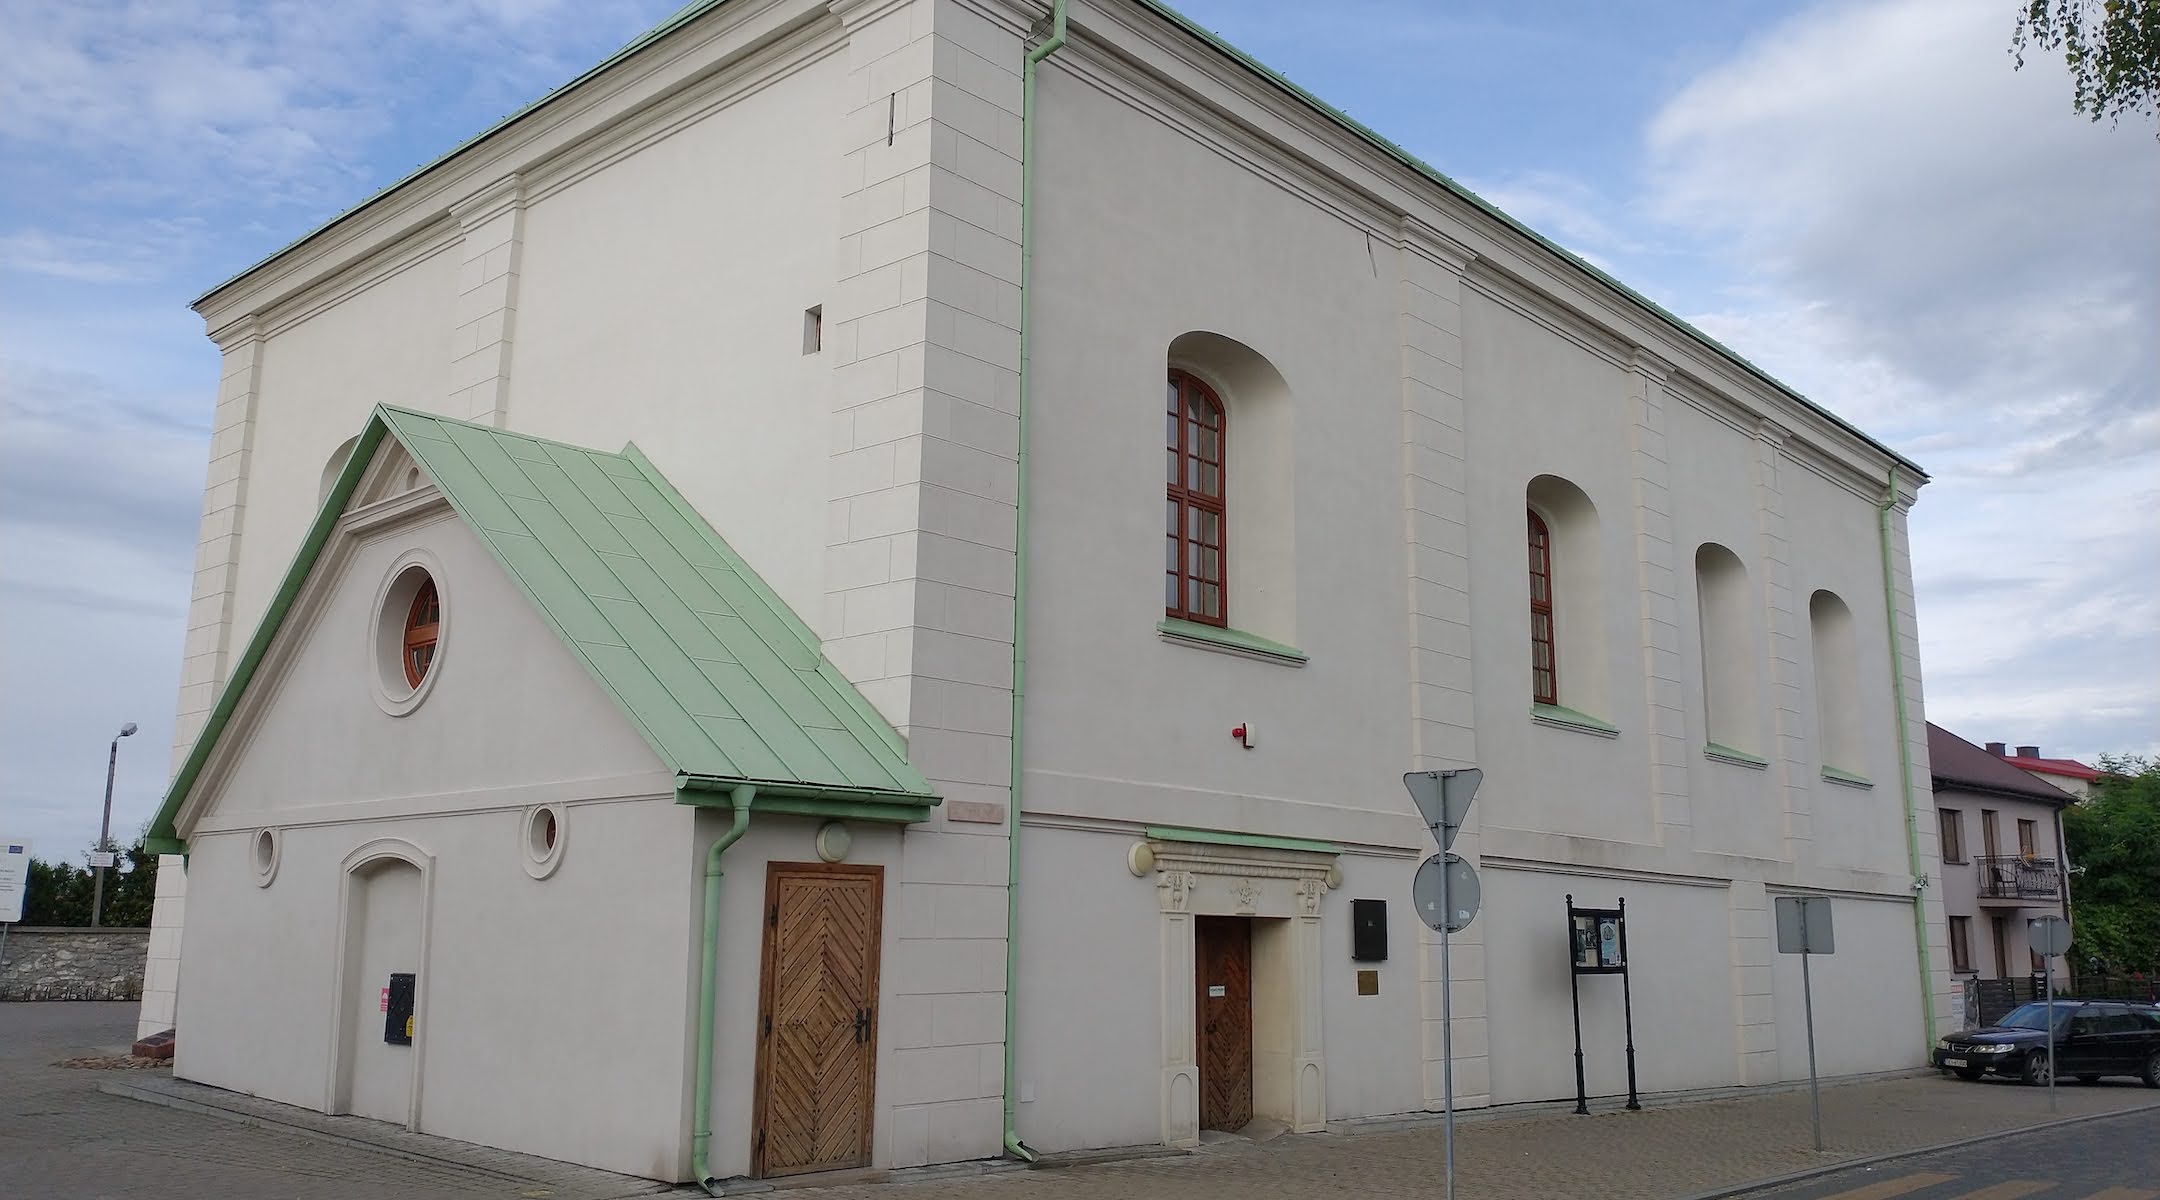 The former synagogue in Chmielnik, Poland. (Wojciech Domagała/Wikimedia Commons)